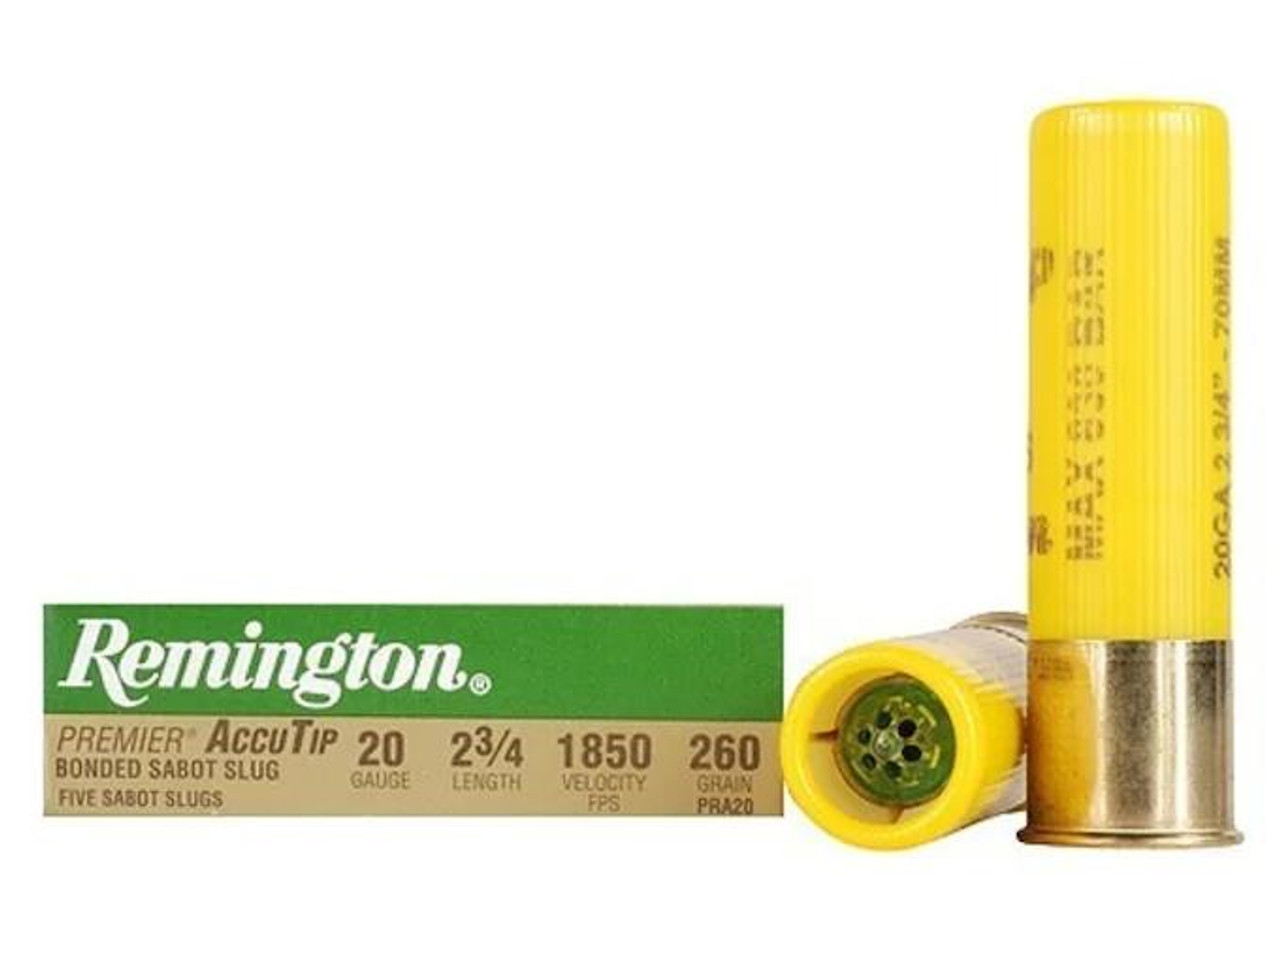 Remington PRemier 20 Gauge 2-3/4" 260 gr AccuTip Bonded Sabot Slug with Power Port Tip 5 rds.